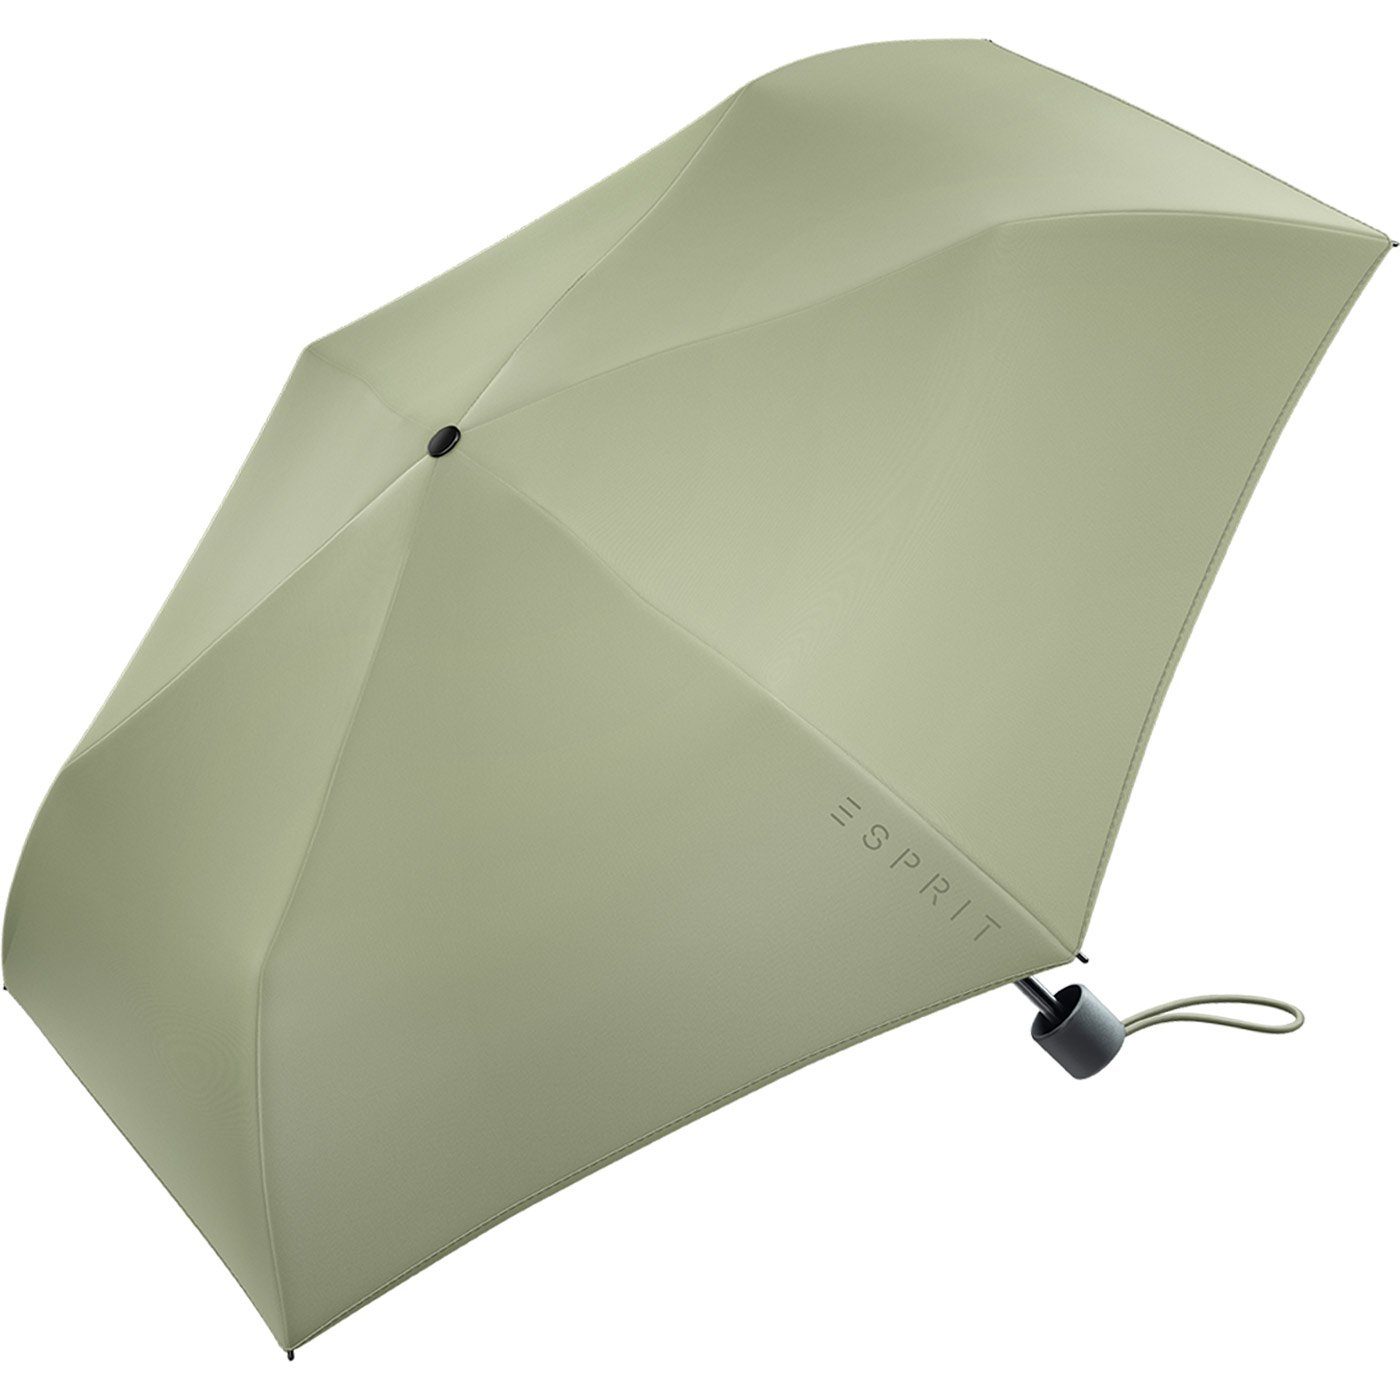 Esprit FJ in Damen Trendfarben sehr olive Taschenregenschirm Mini neuen Slimline leicht, den Regenschirm 2022,